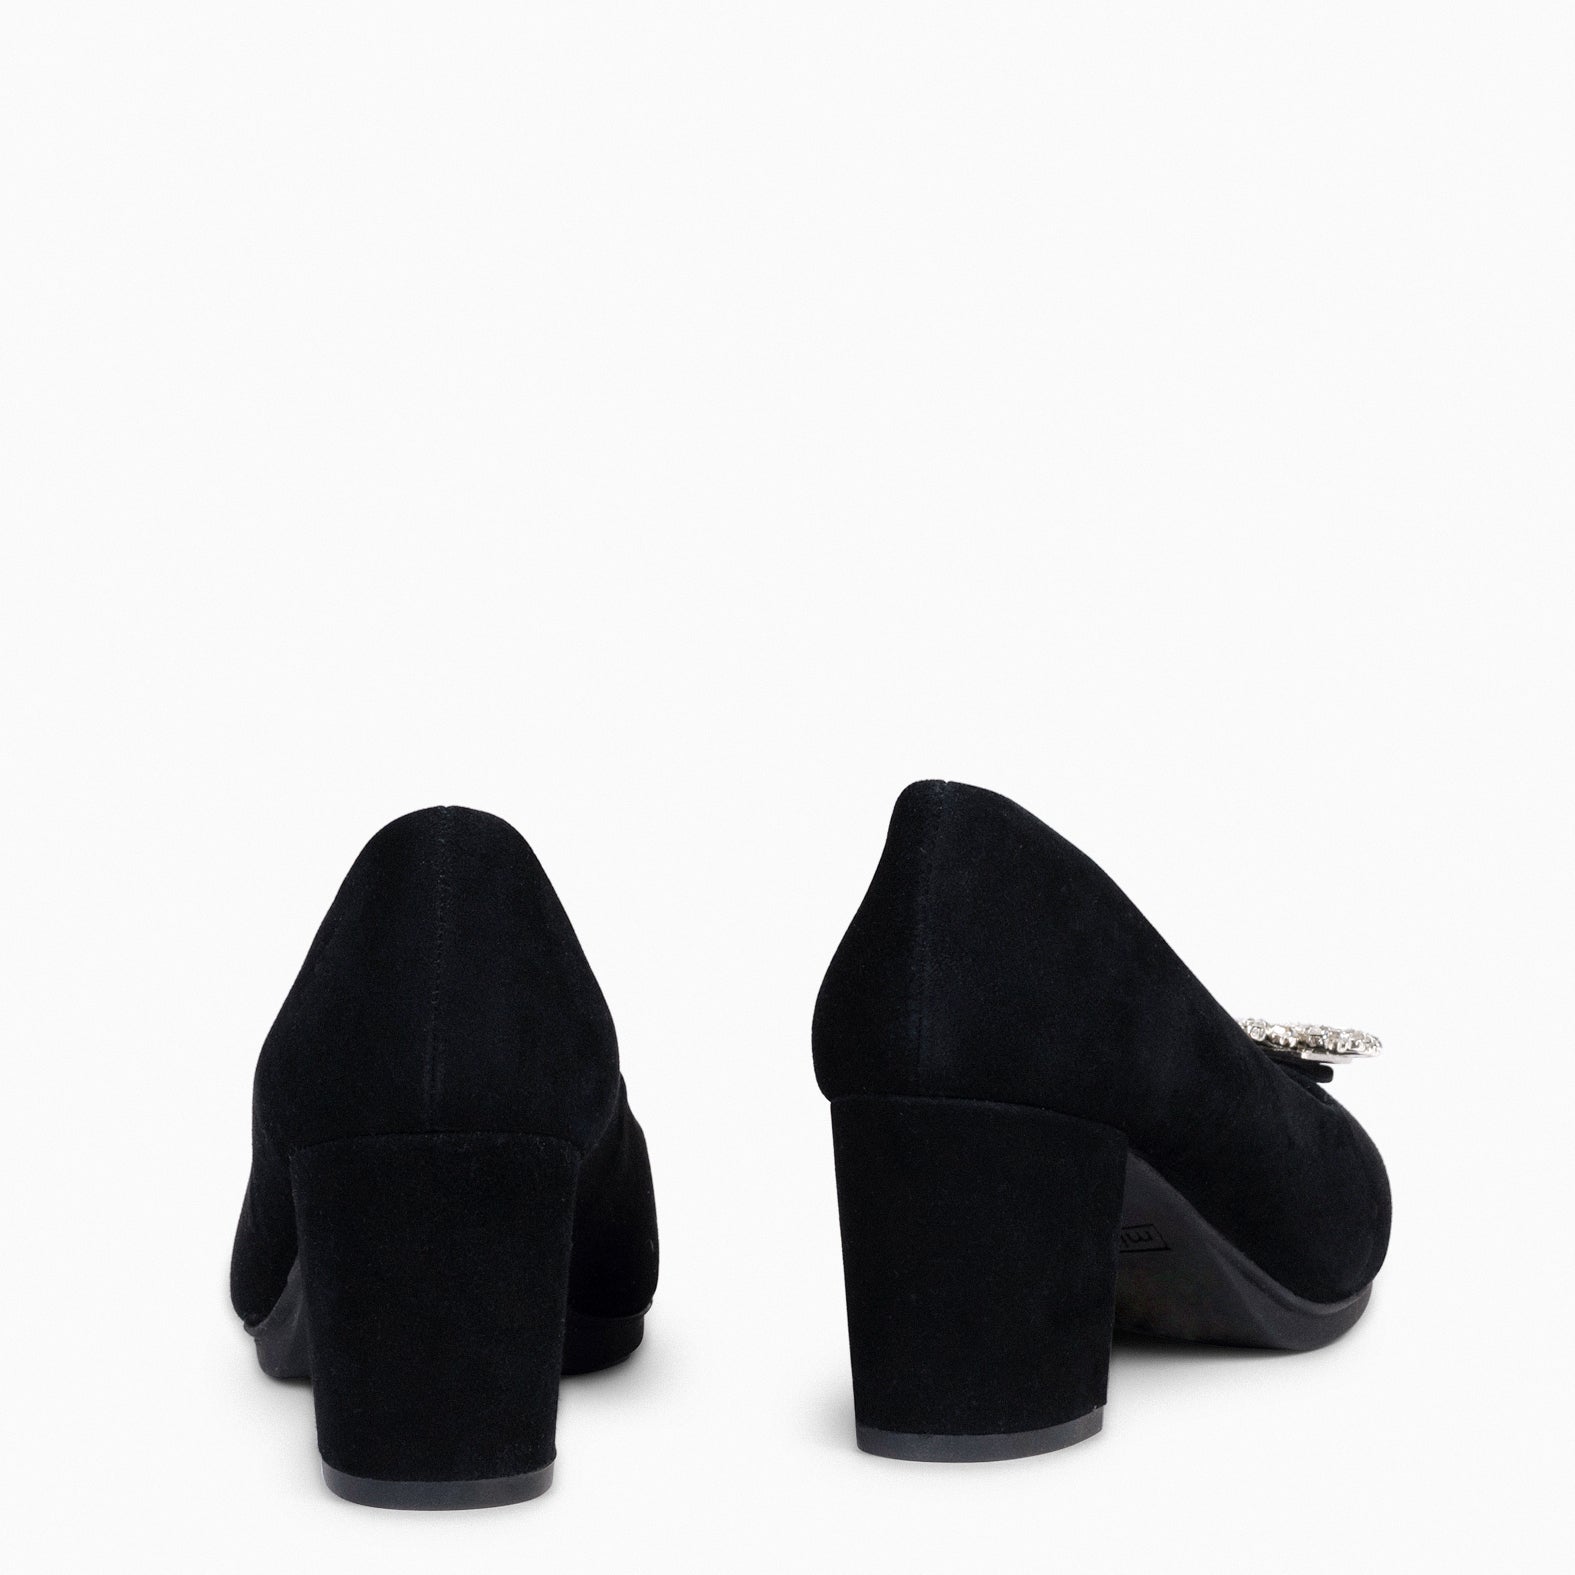 URBAN S CRISTAL - Zapatos de tacón con adorno de cristal NEGRO